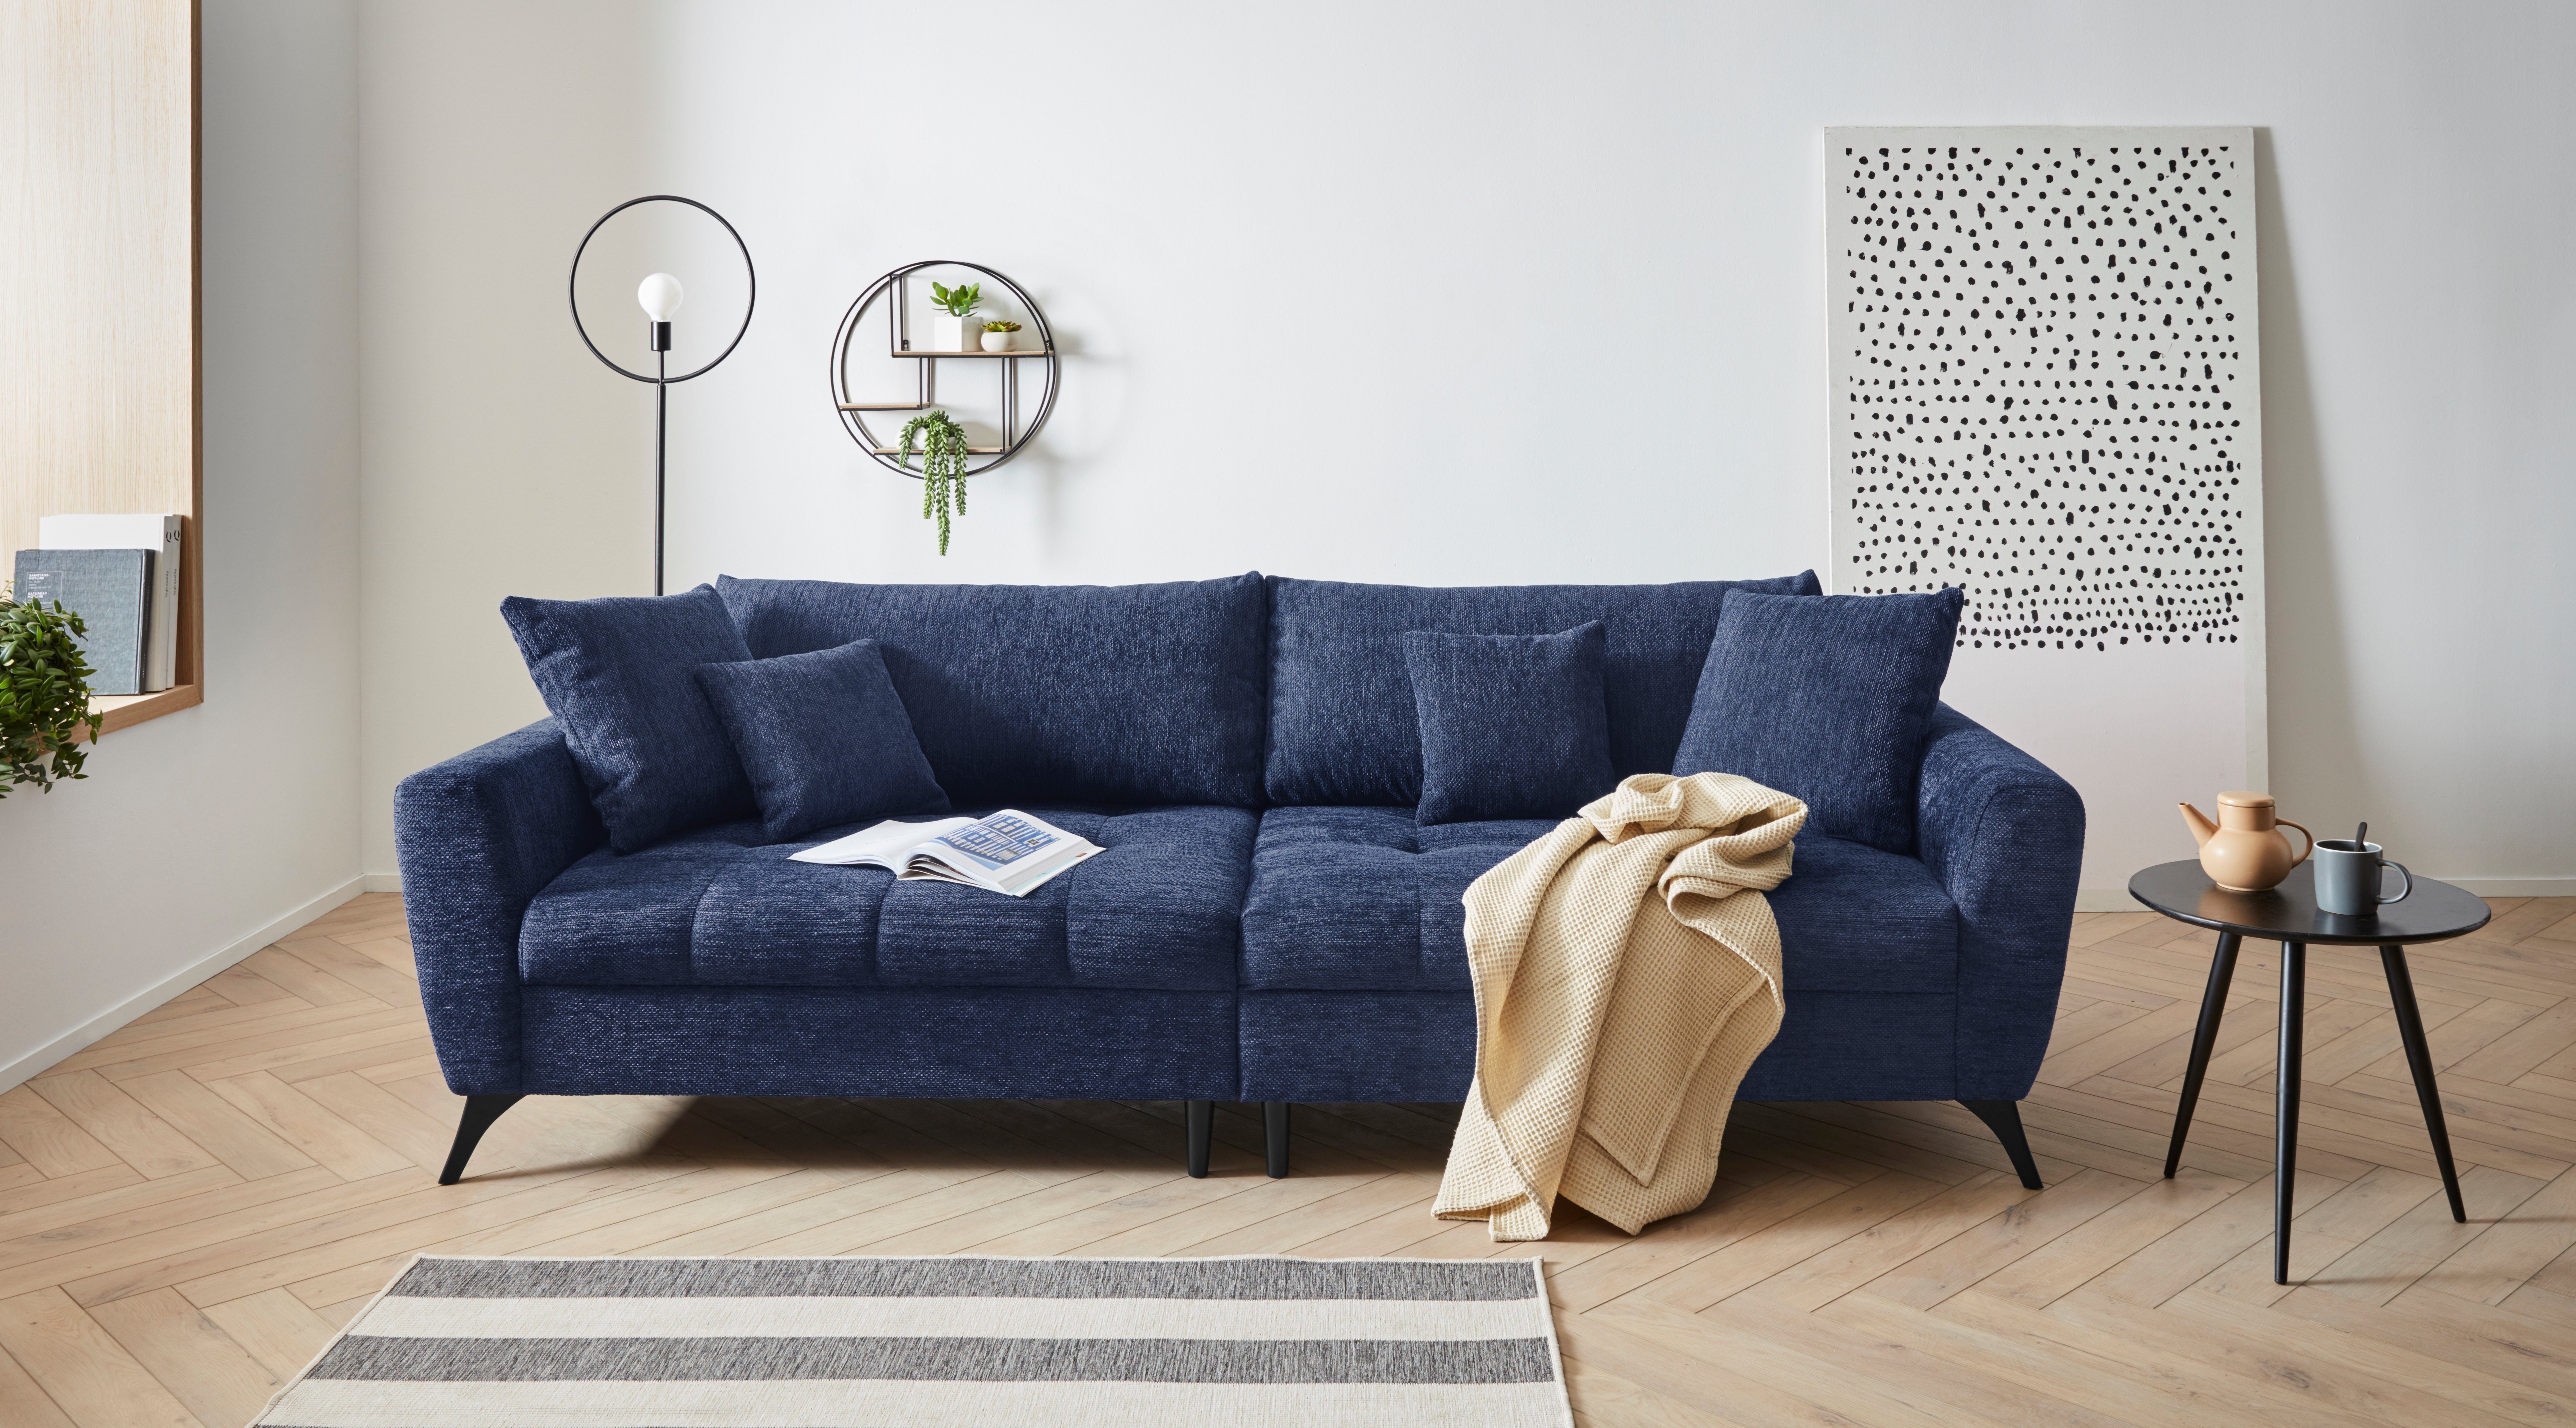 INOSIGN Big-Sofa Sitzplatz, Aqua clean-Bezug mit 140kg auch Belastbarkeit pro Lörby, bis